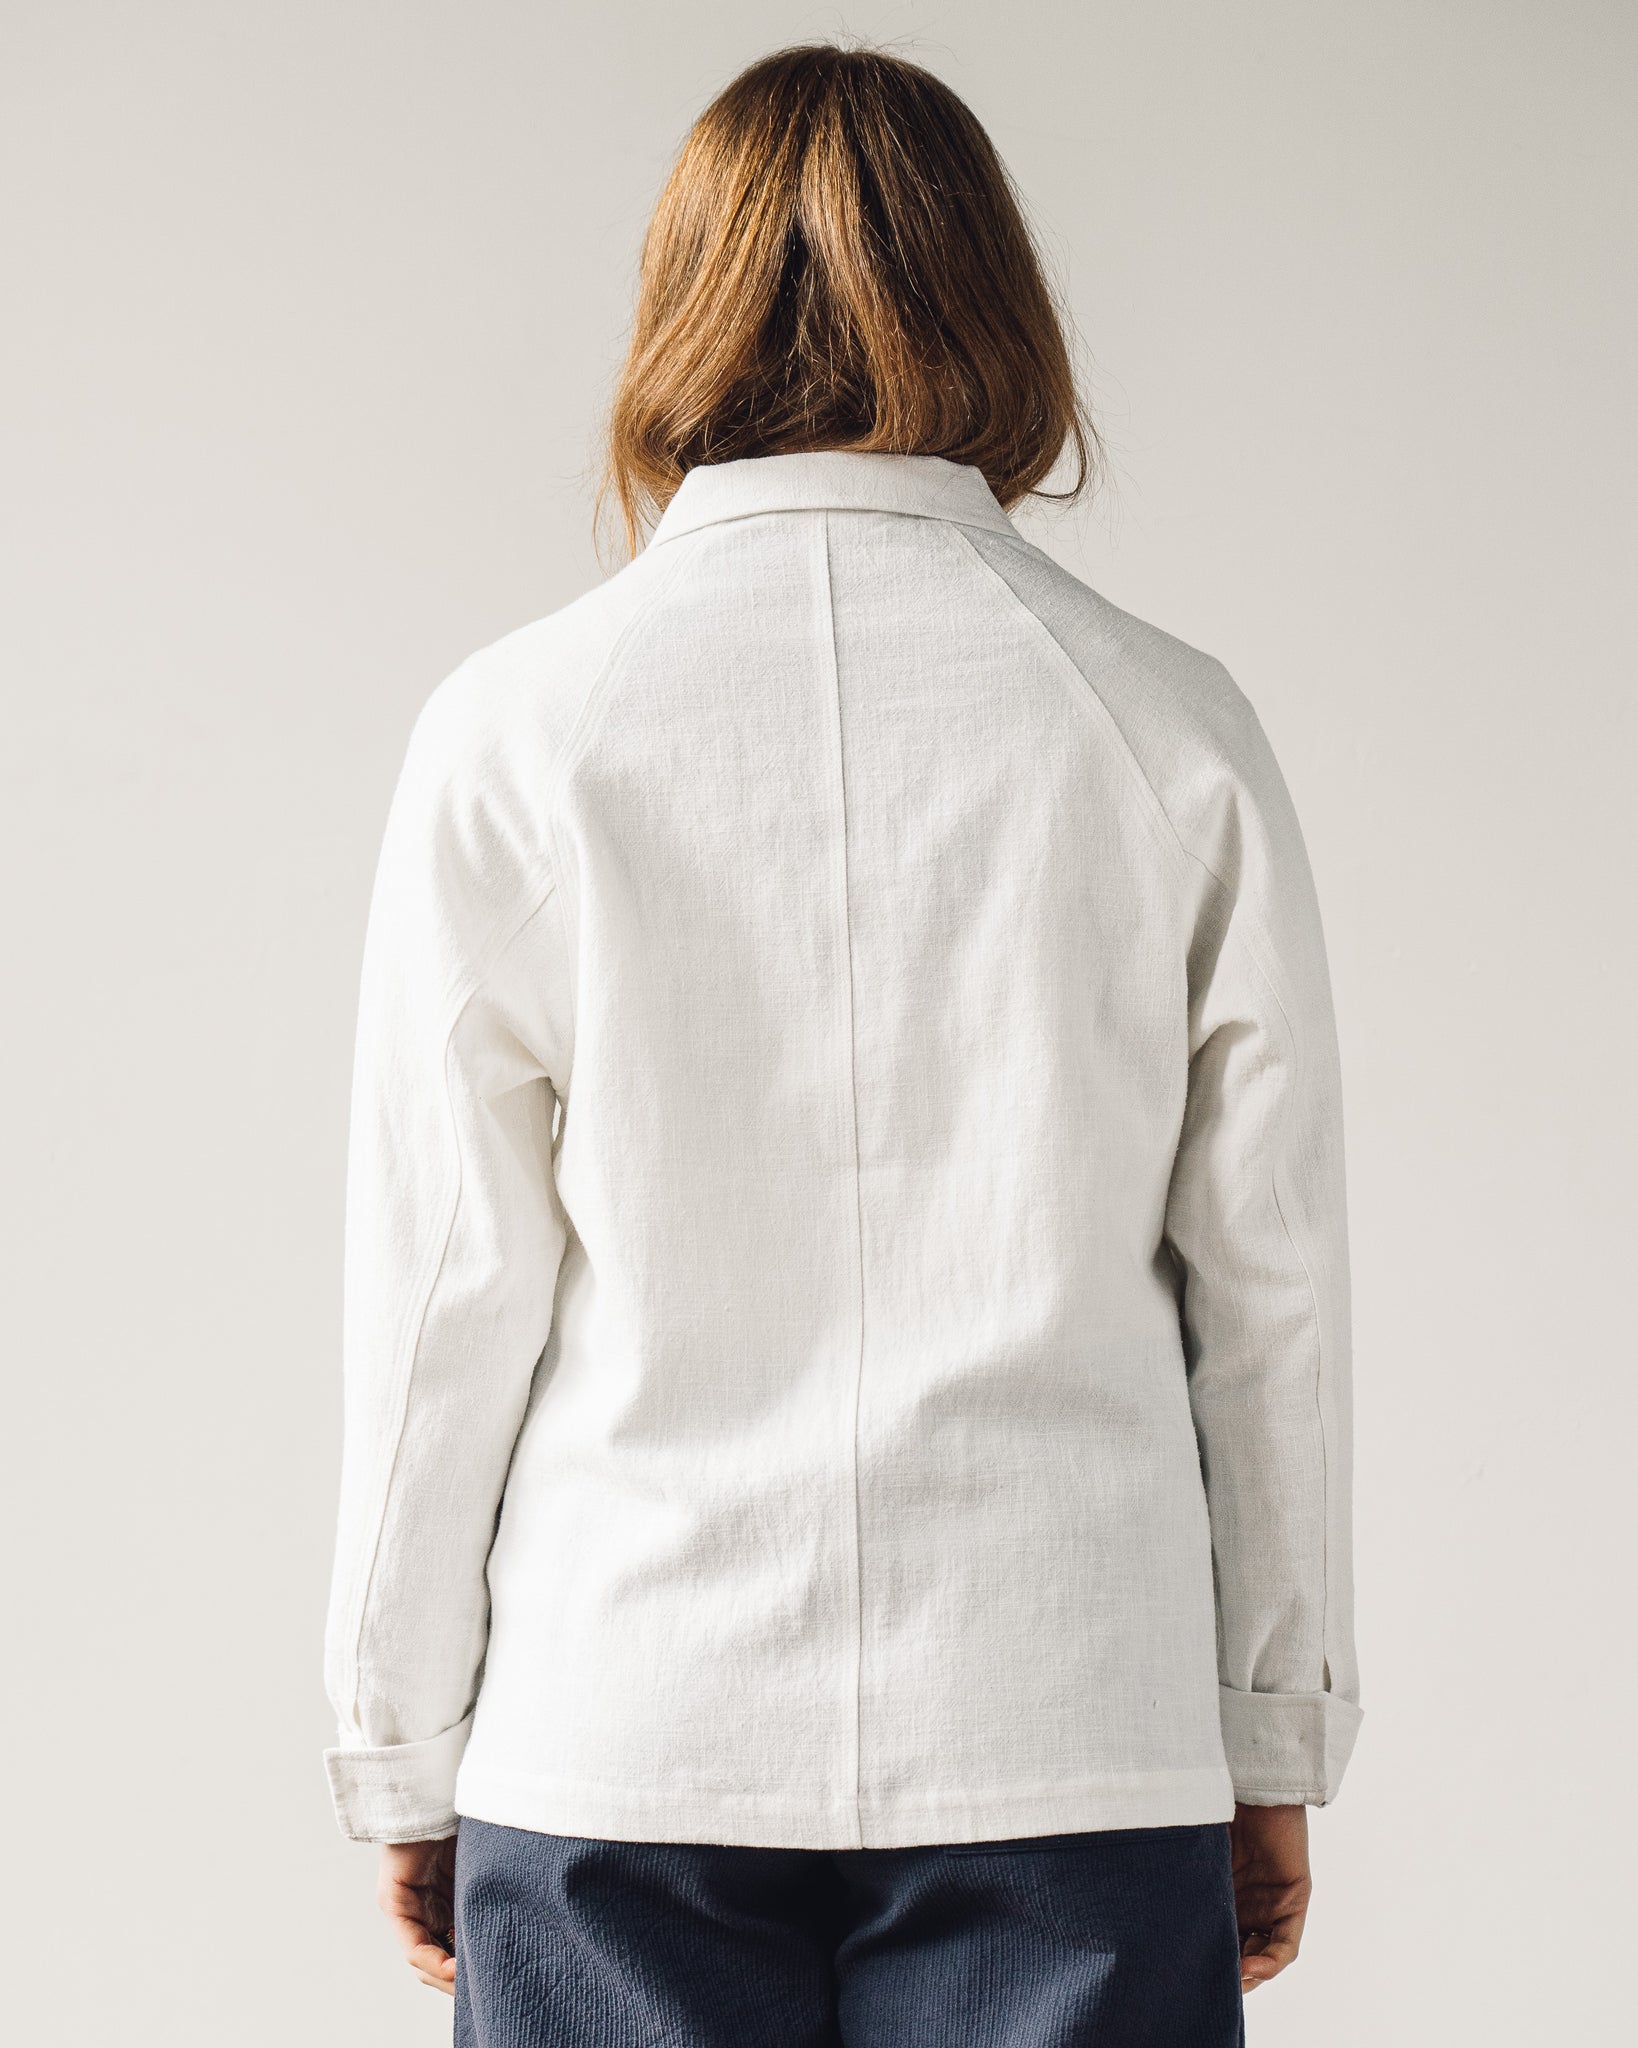 7115 Unisex Chore Jacket, Off-White